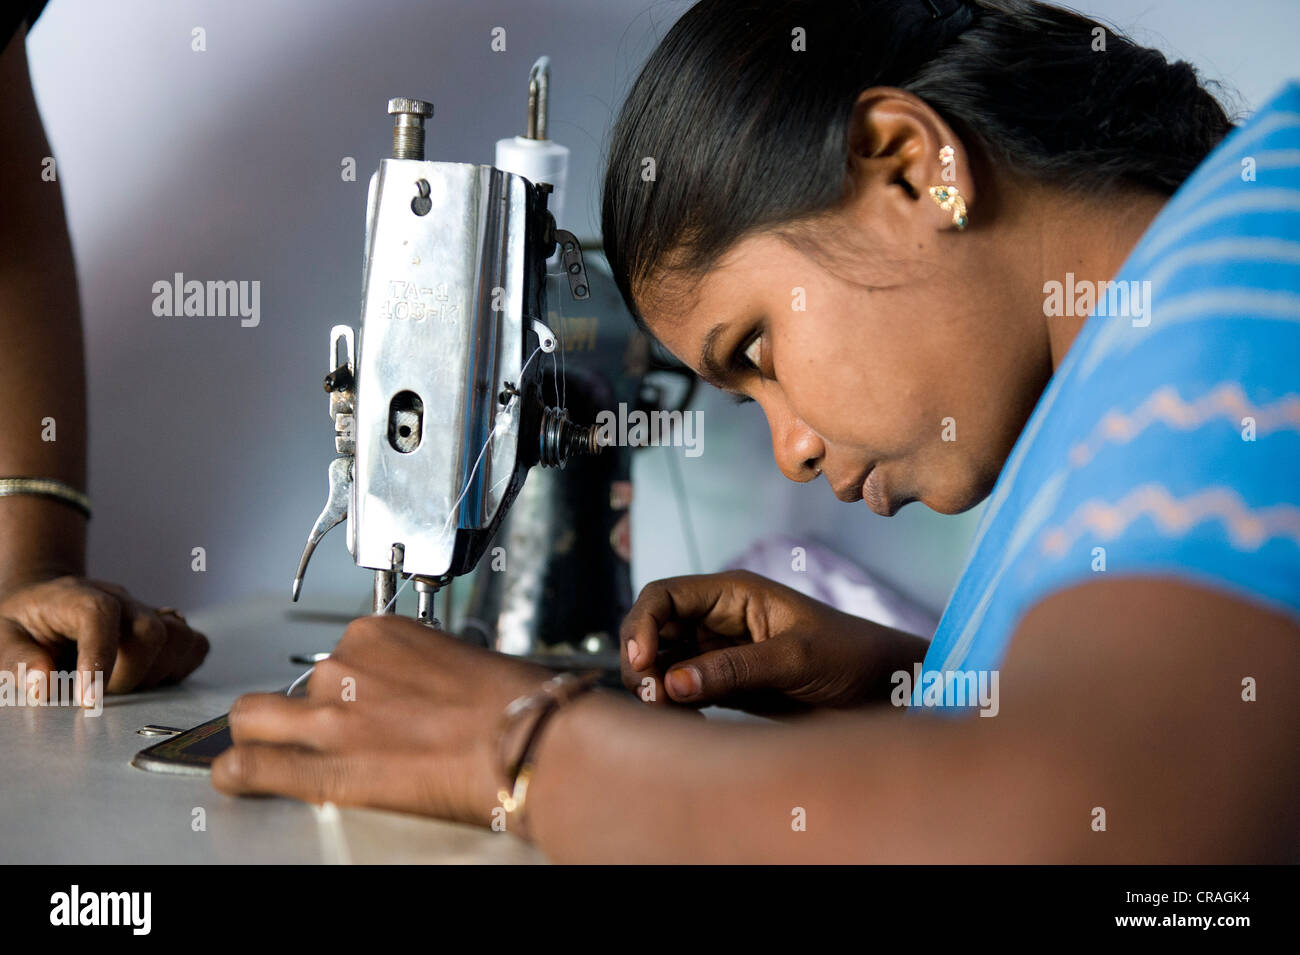 Junge Frau wird gelehrt, Näh- und Schneiderei, berufliche und technische Ausbildung, Nanniyur Pudhur in der Nähe von Karur, Tamil Nadu, Indien Stockfoto